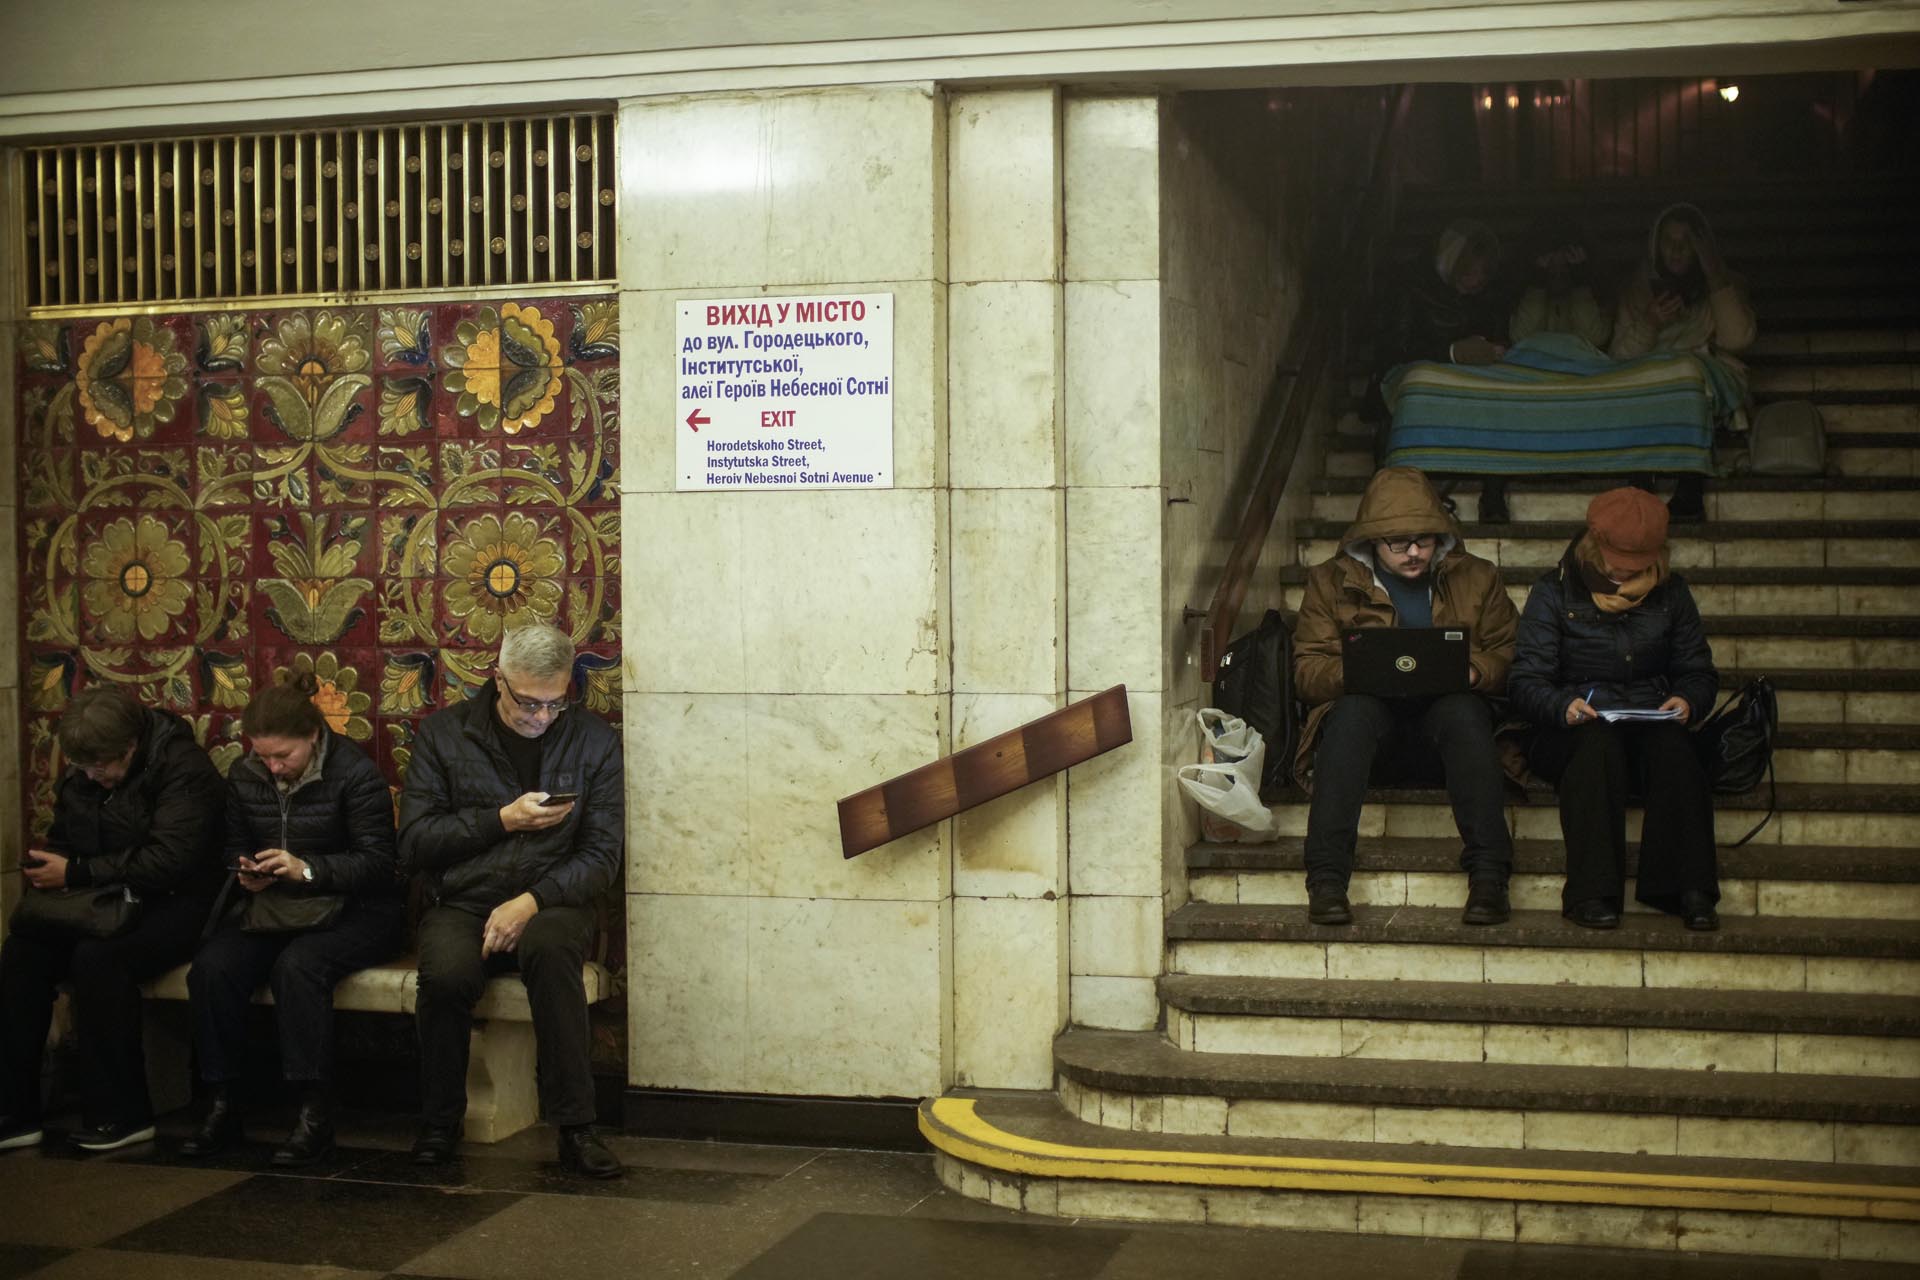 ARCHIVO - Personas sentadas en el metro, usándolo como refugio antiaéreo durante una alarma antiaérea, en Kiev, Ucrania, el jueves 20 de octubre de 2022. (Foto AP/Francisco Seco, Archivo)

